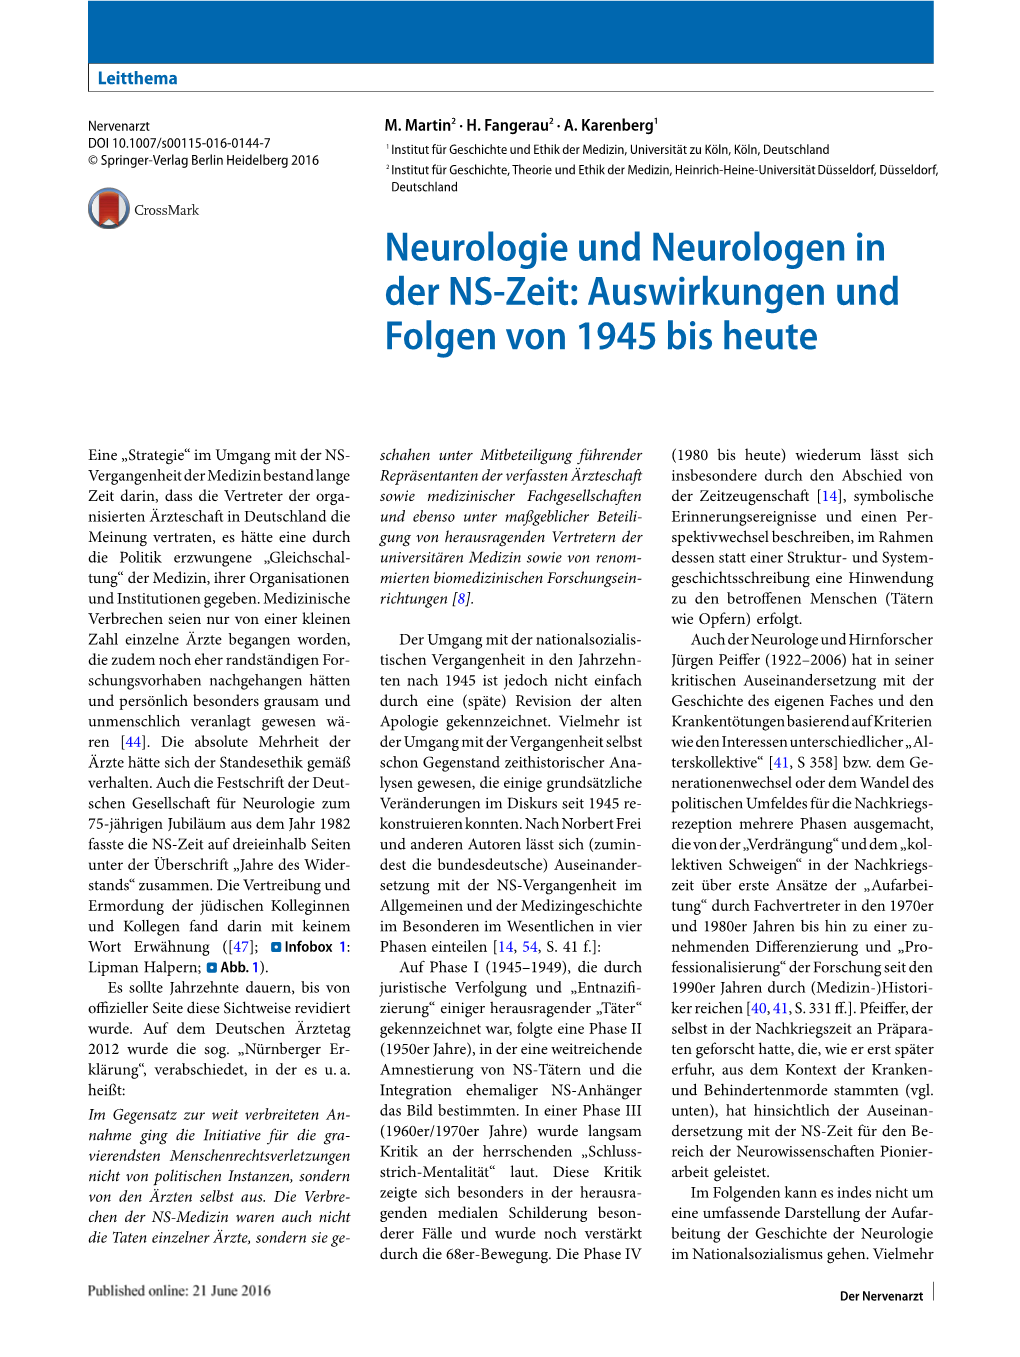 Neurologie Und Neurologen in Der NS-Zeit: Auswirkungen Und Folgen Von 1945 Bis Heute